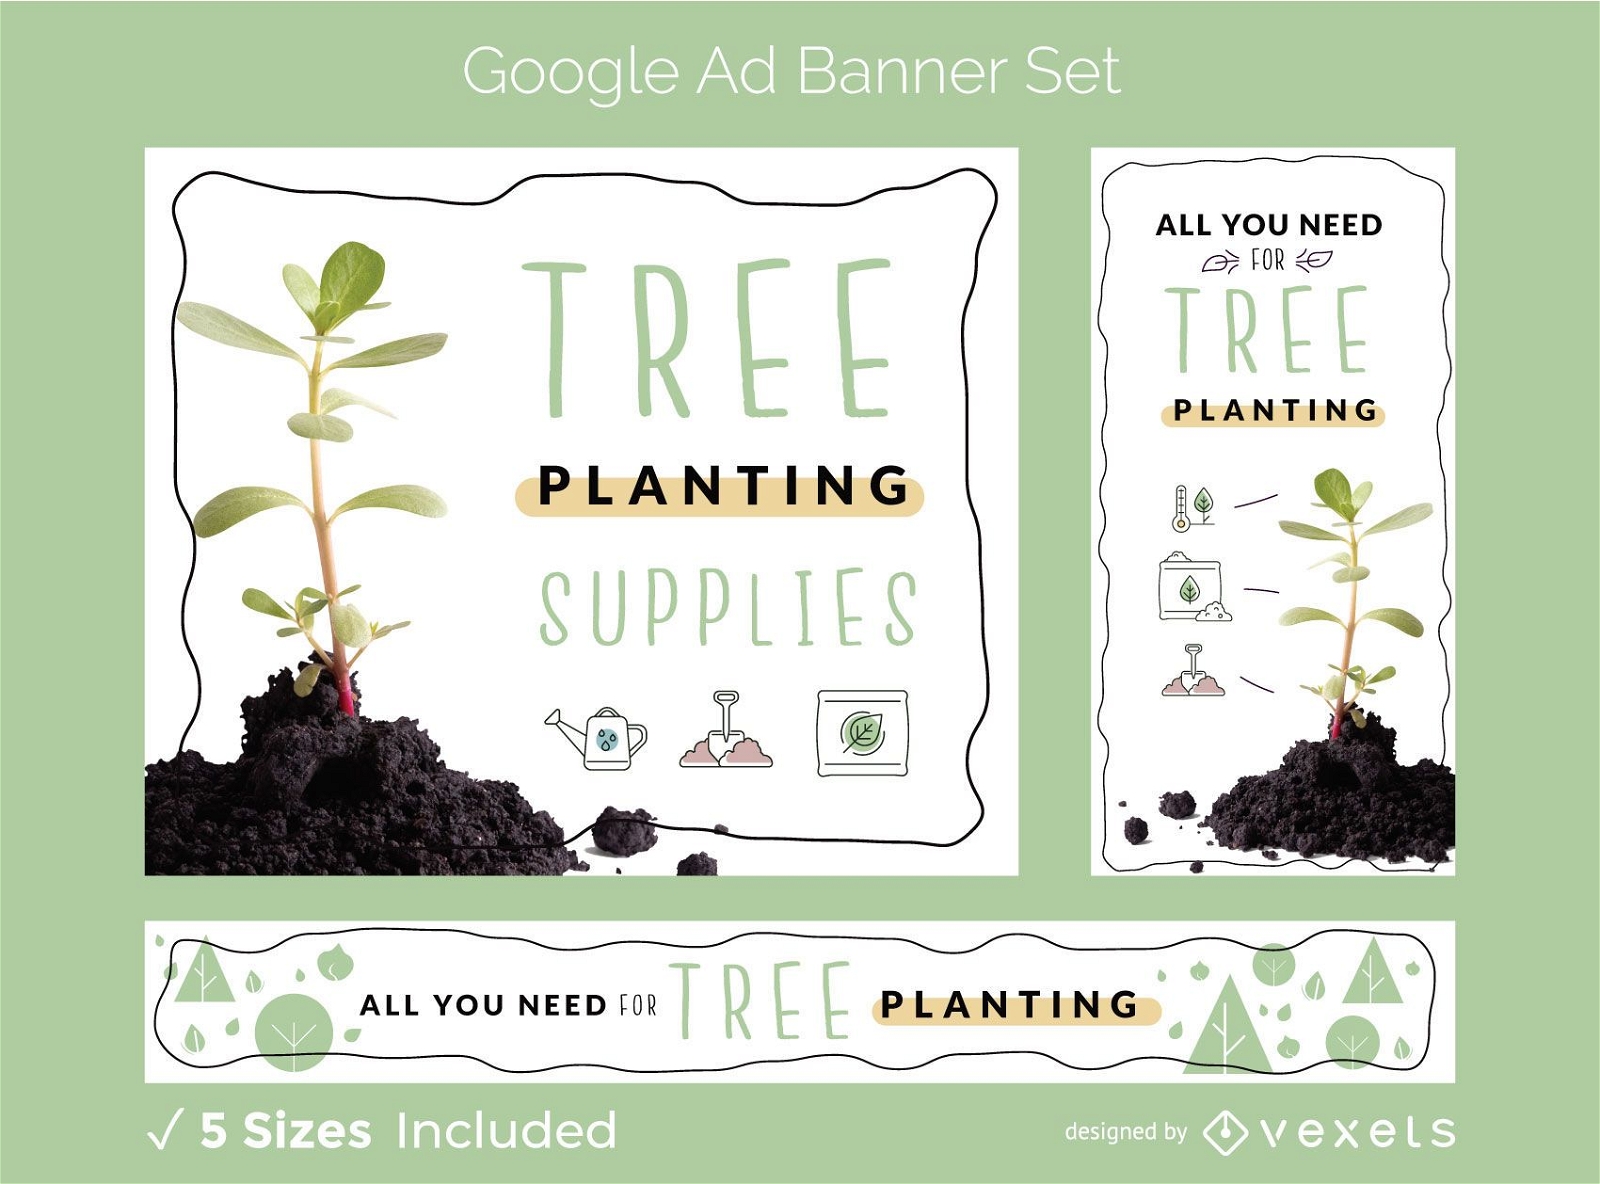 Baumpflanzungs-Werbebannersatz